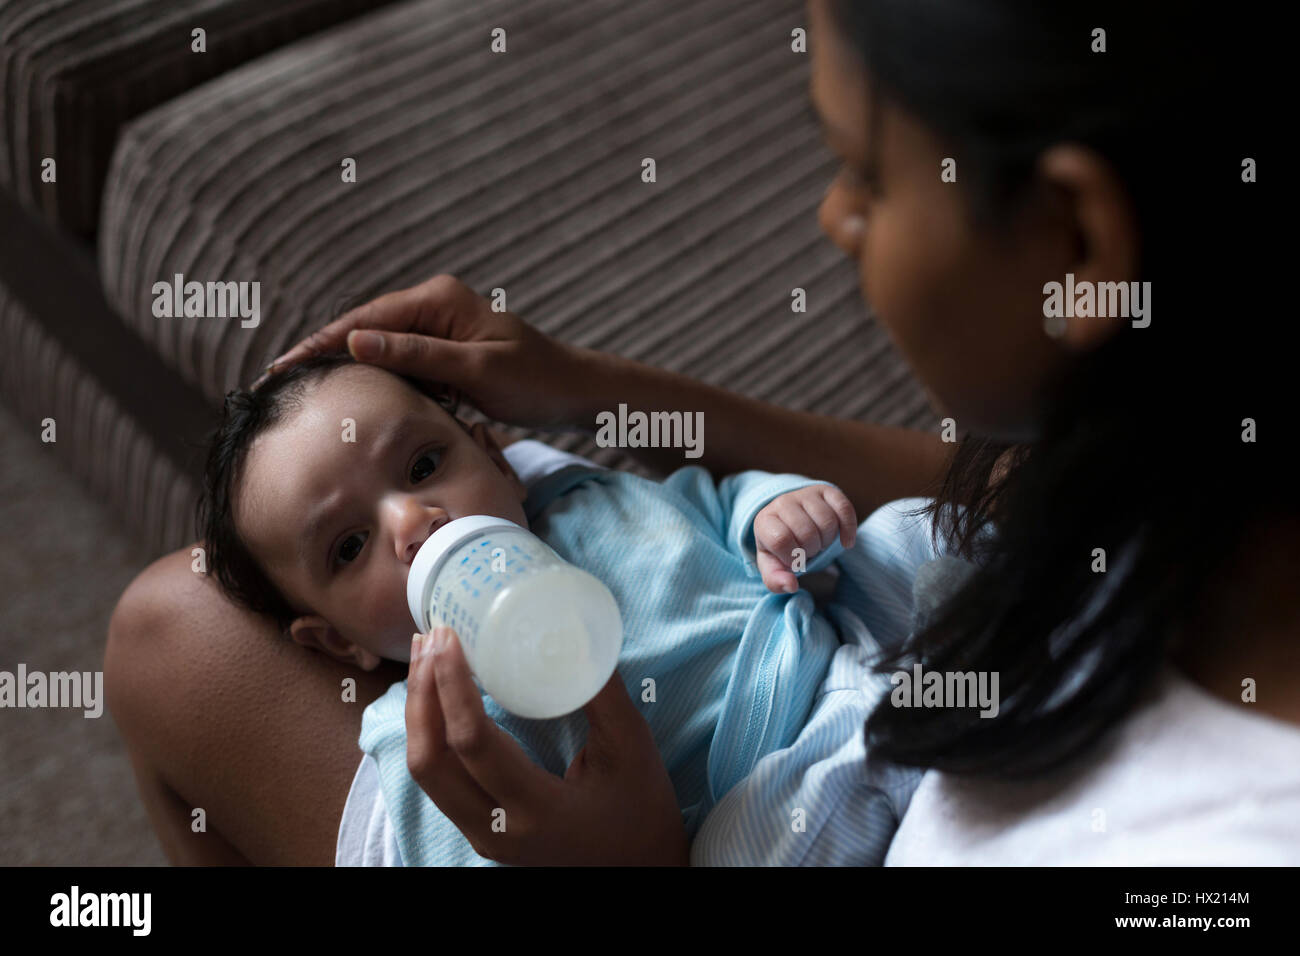 Jeune mère est assise avec son bébé sur ses genoux. Elle est l'alimentation de lui une bouteille de lait. Banque D'Images